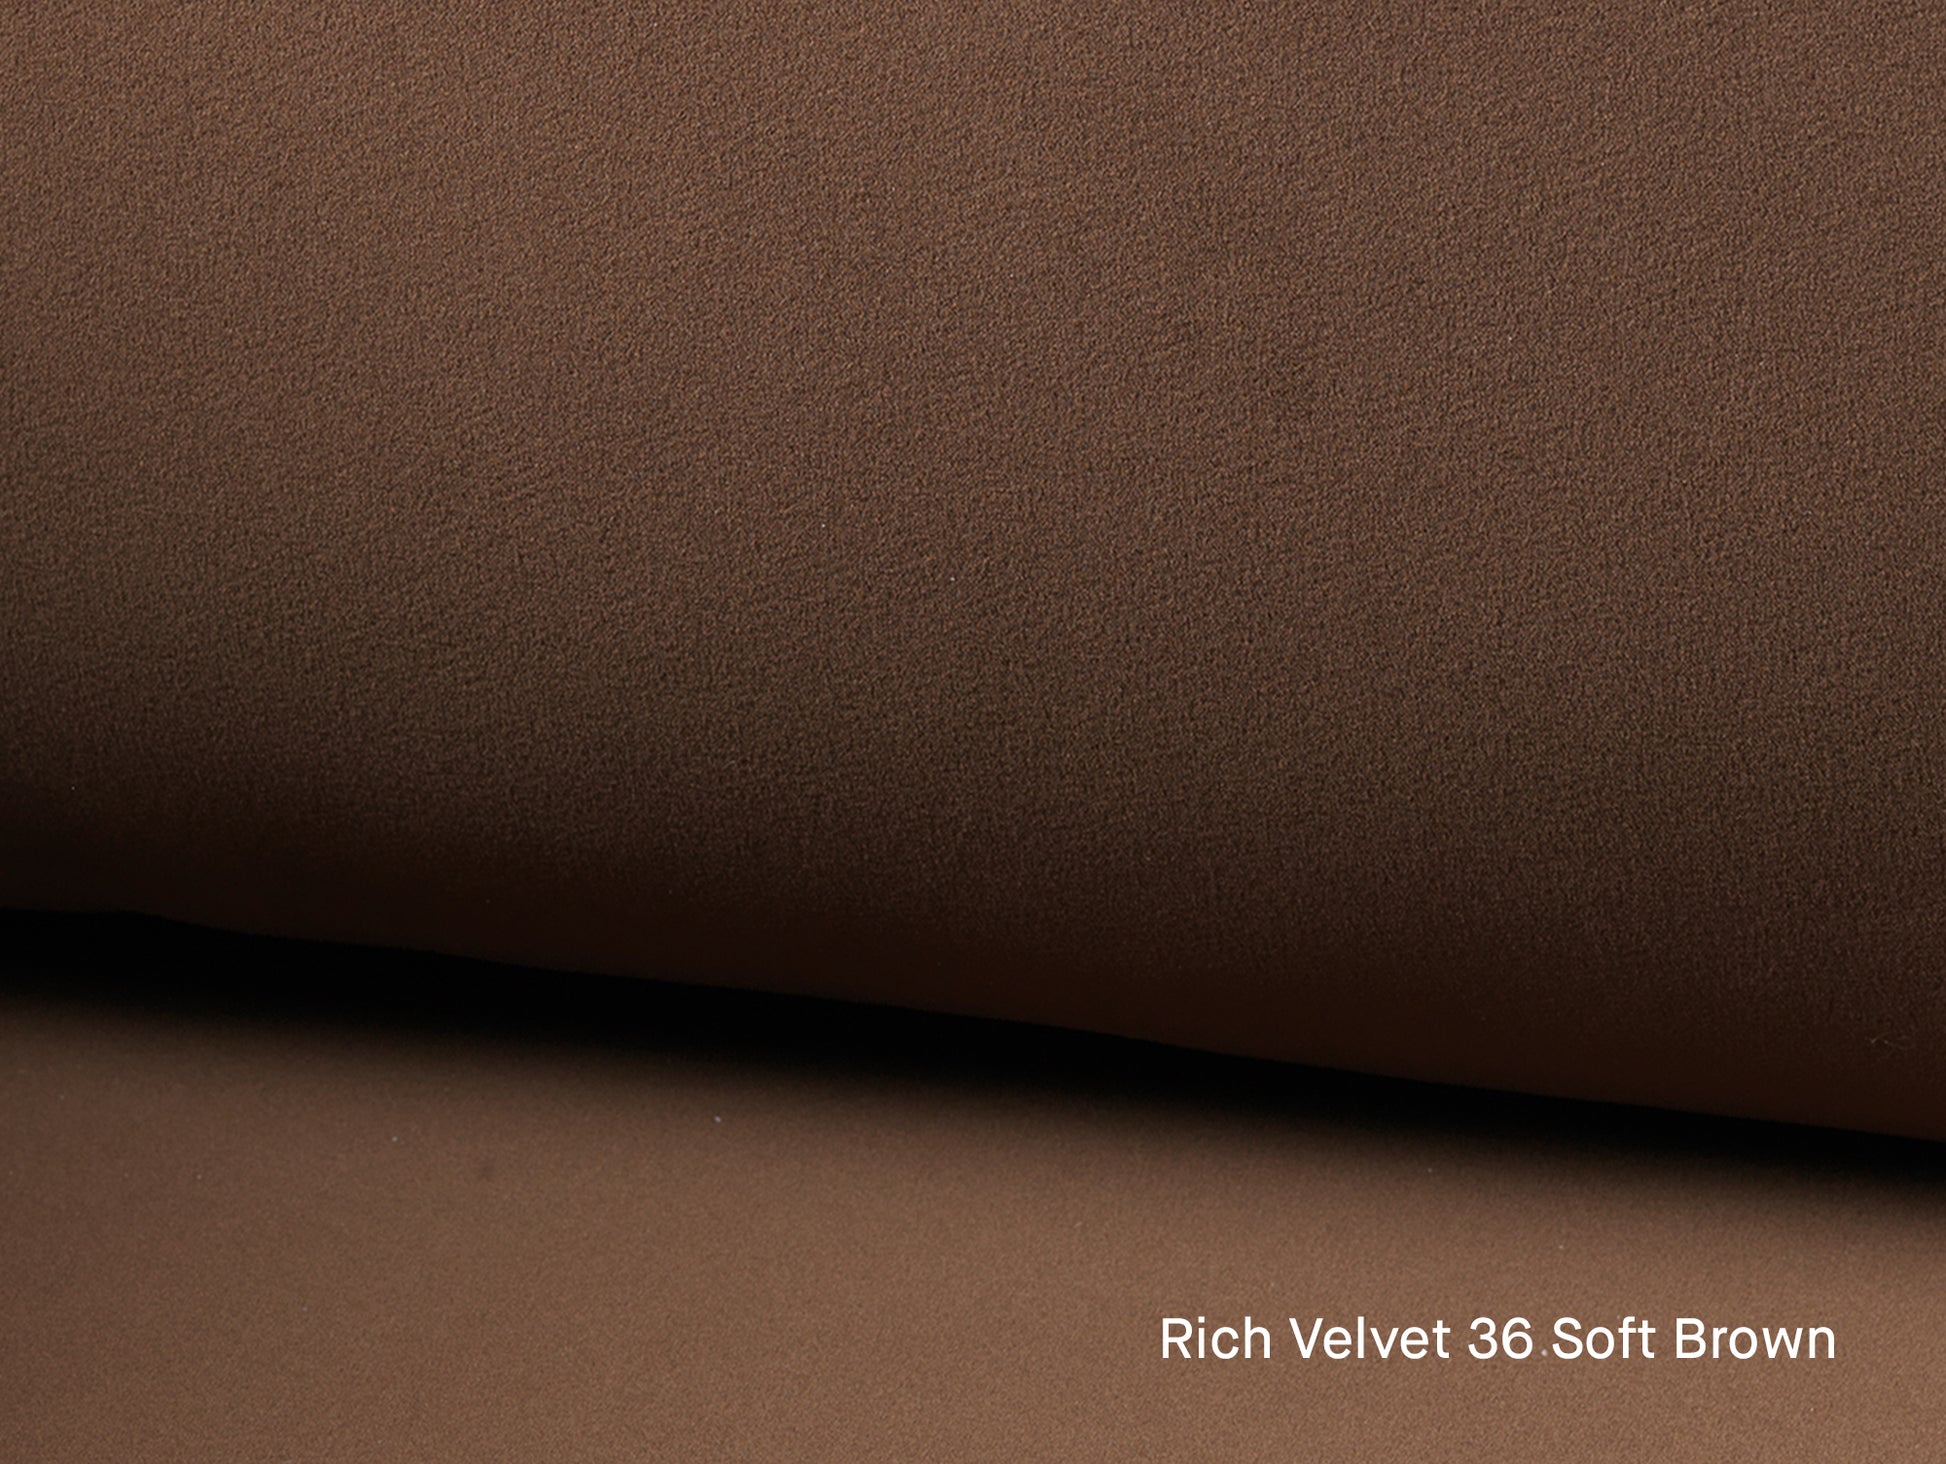 Rico 4-Seater Sofa by Ferm Living - Rich Velvet 36